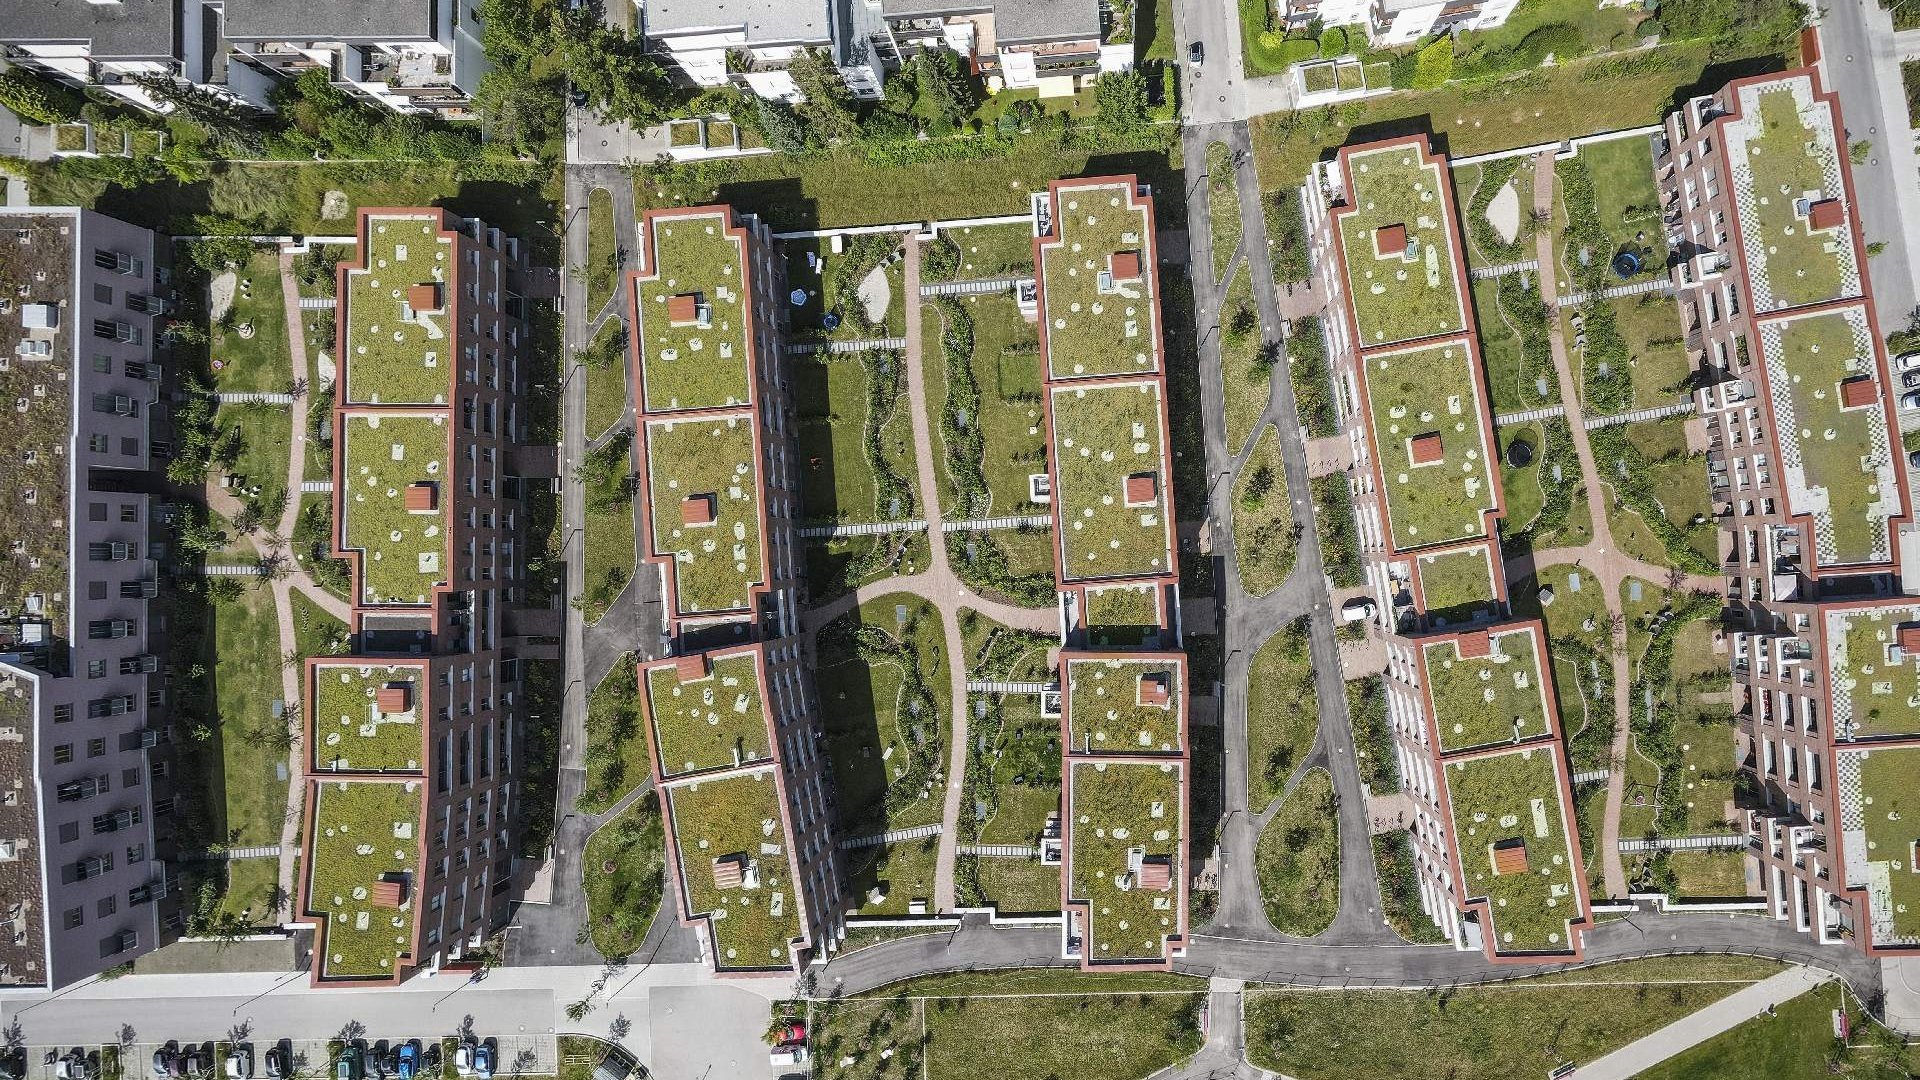 Luftaufnahme der Wohnsiedlung in der Nanette-Bald-Straße in München als Symbolbild für die Regulatorik und die neuen Gesetze zur Erreichung der Klimaneutralität.